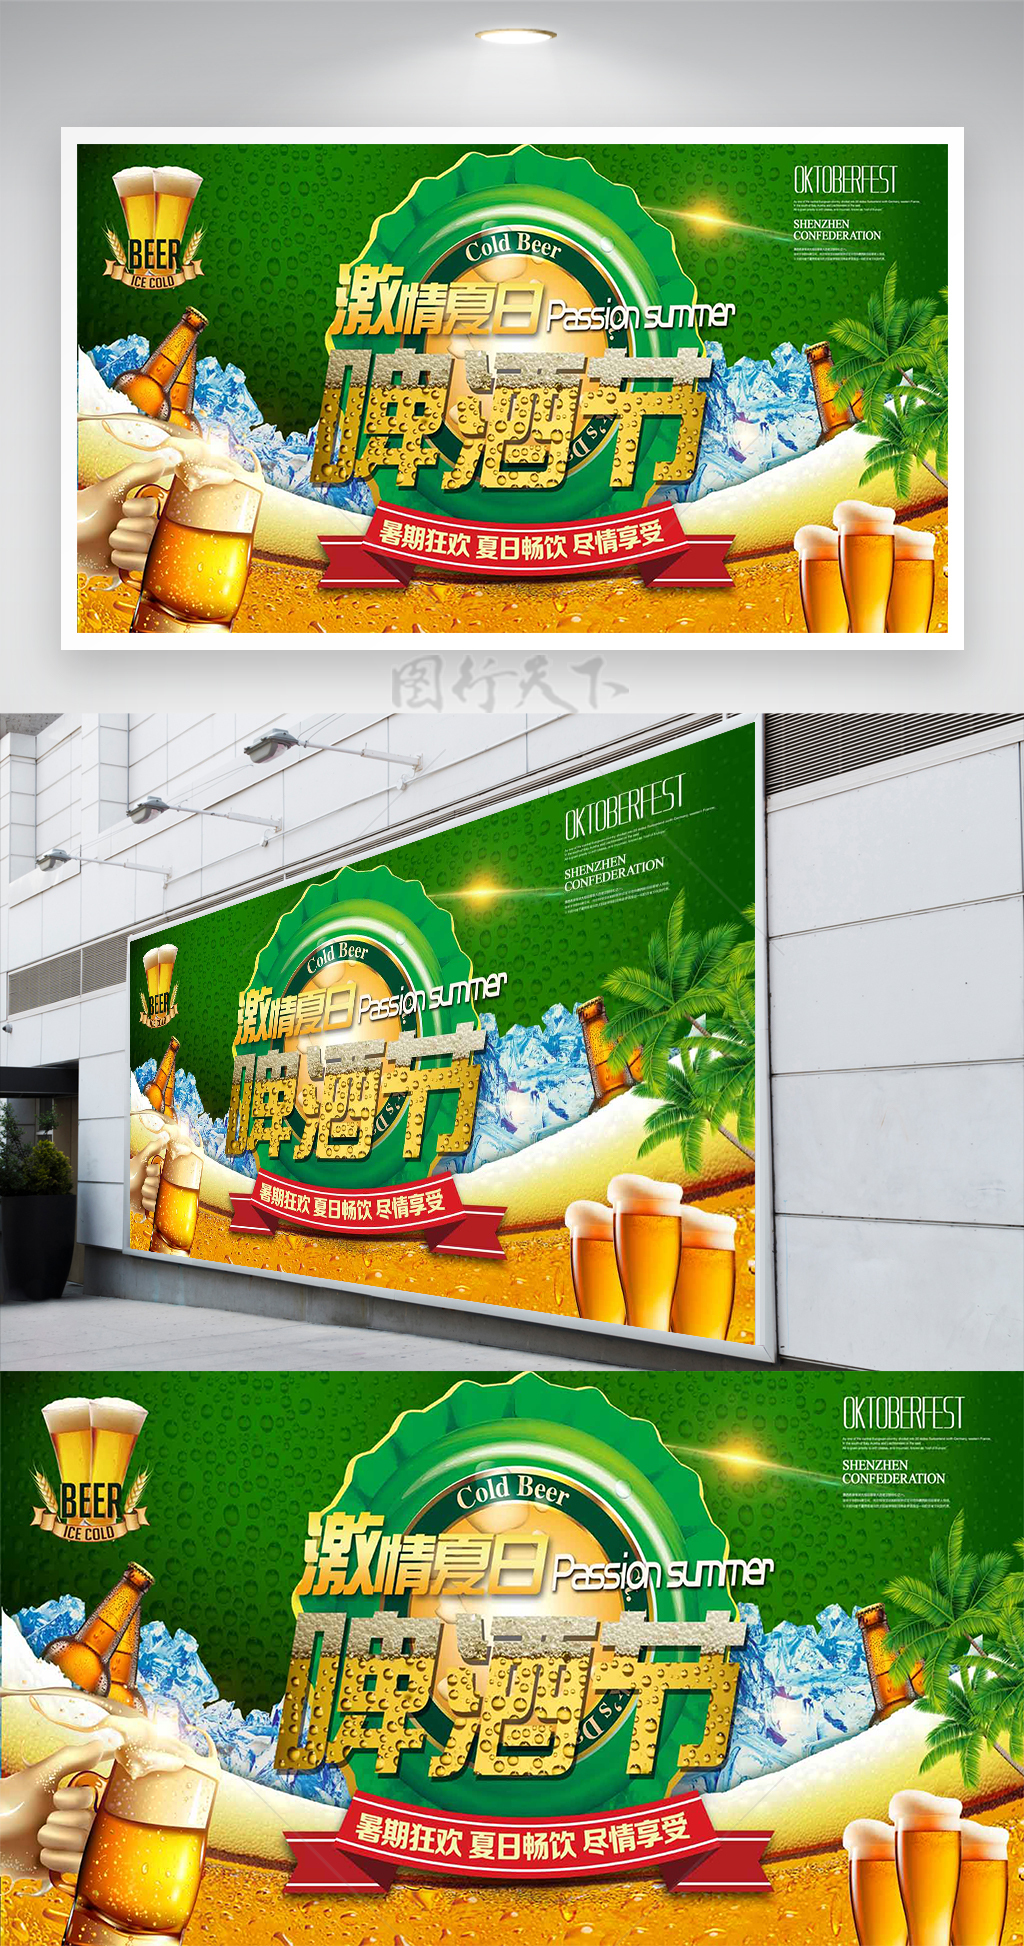 暑期狂欢夏日畅饮啤酒节节日宣传展板